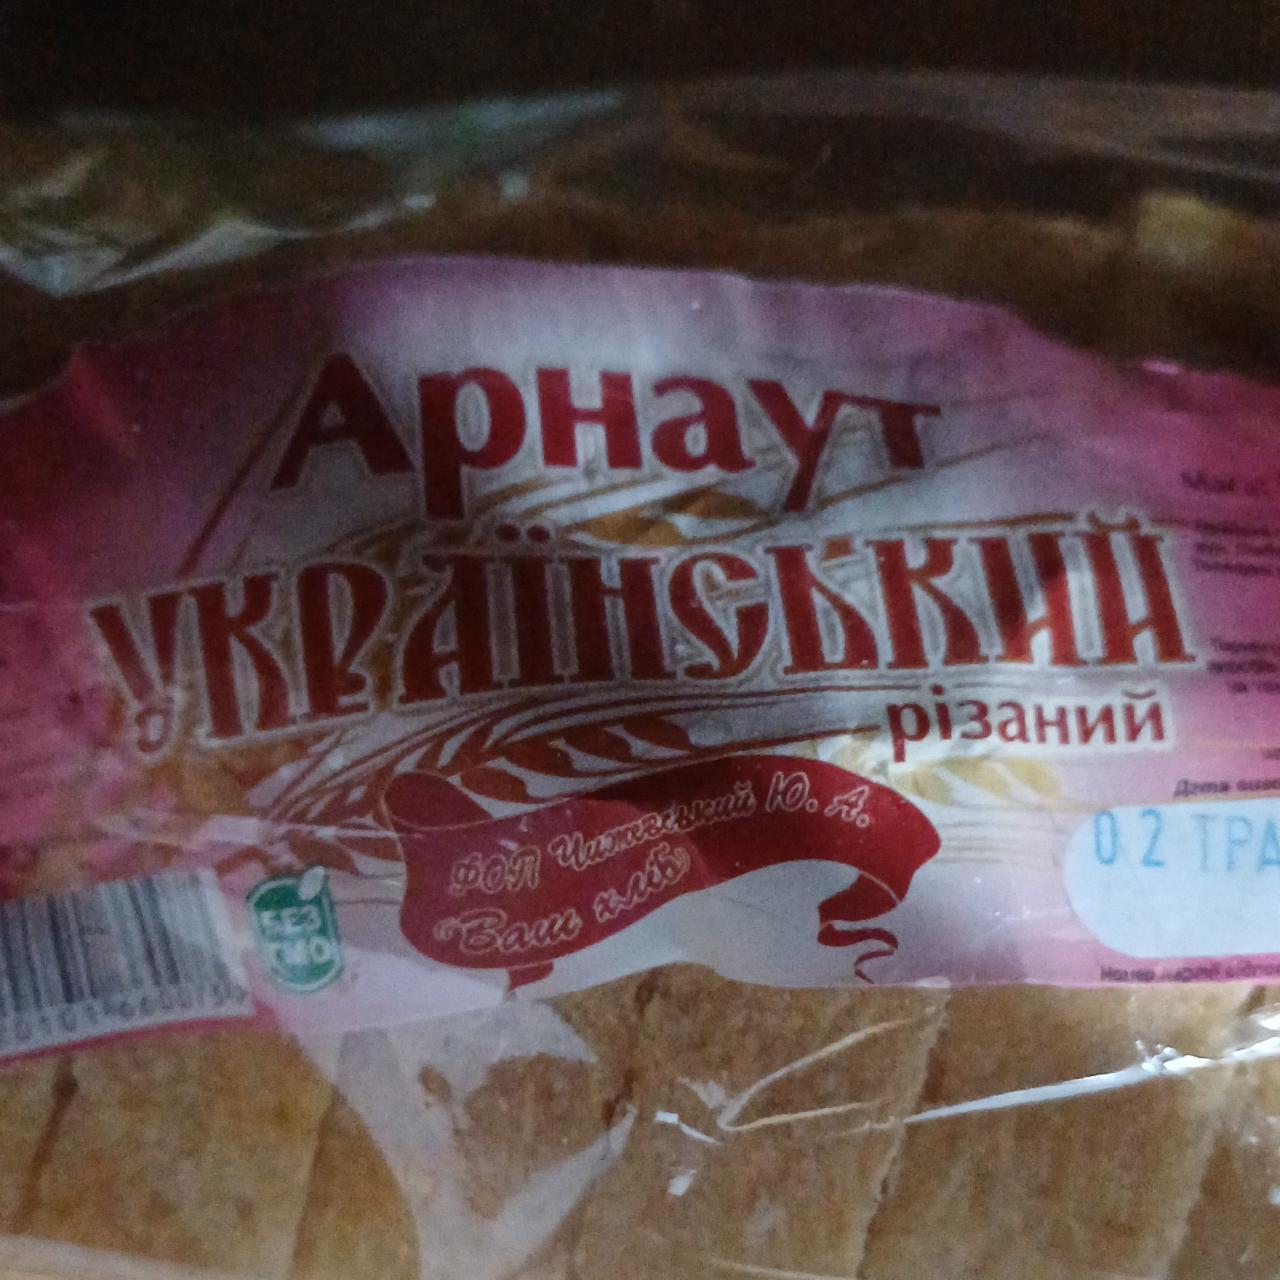 Фото - Хліб Арнаут Український різаний Ваш хліб